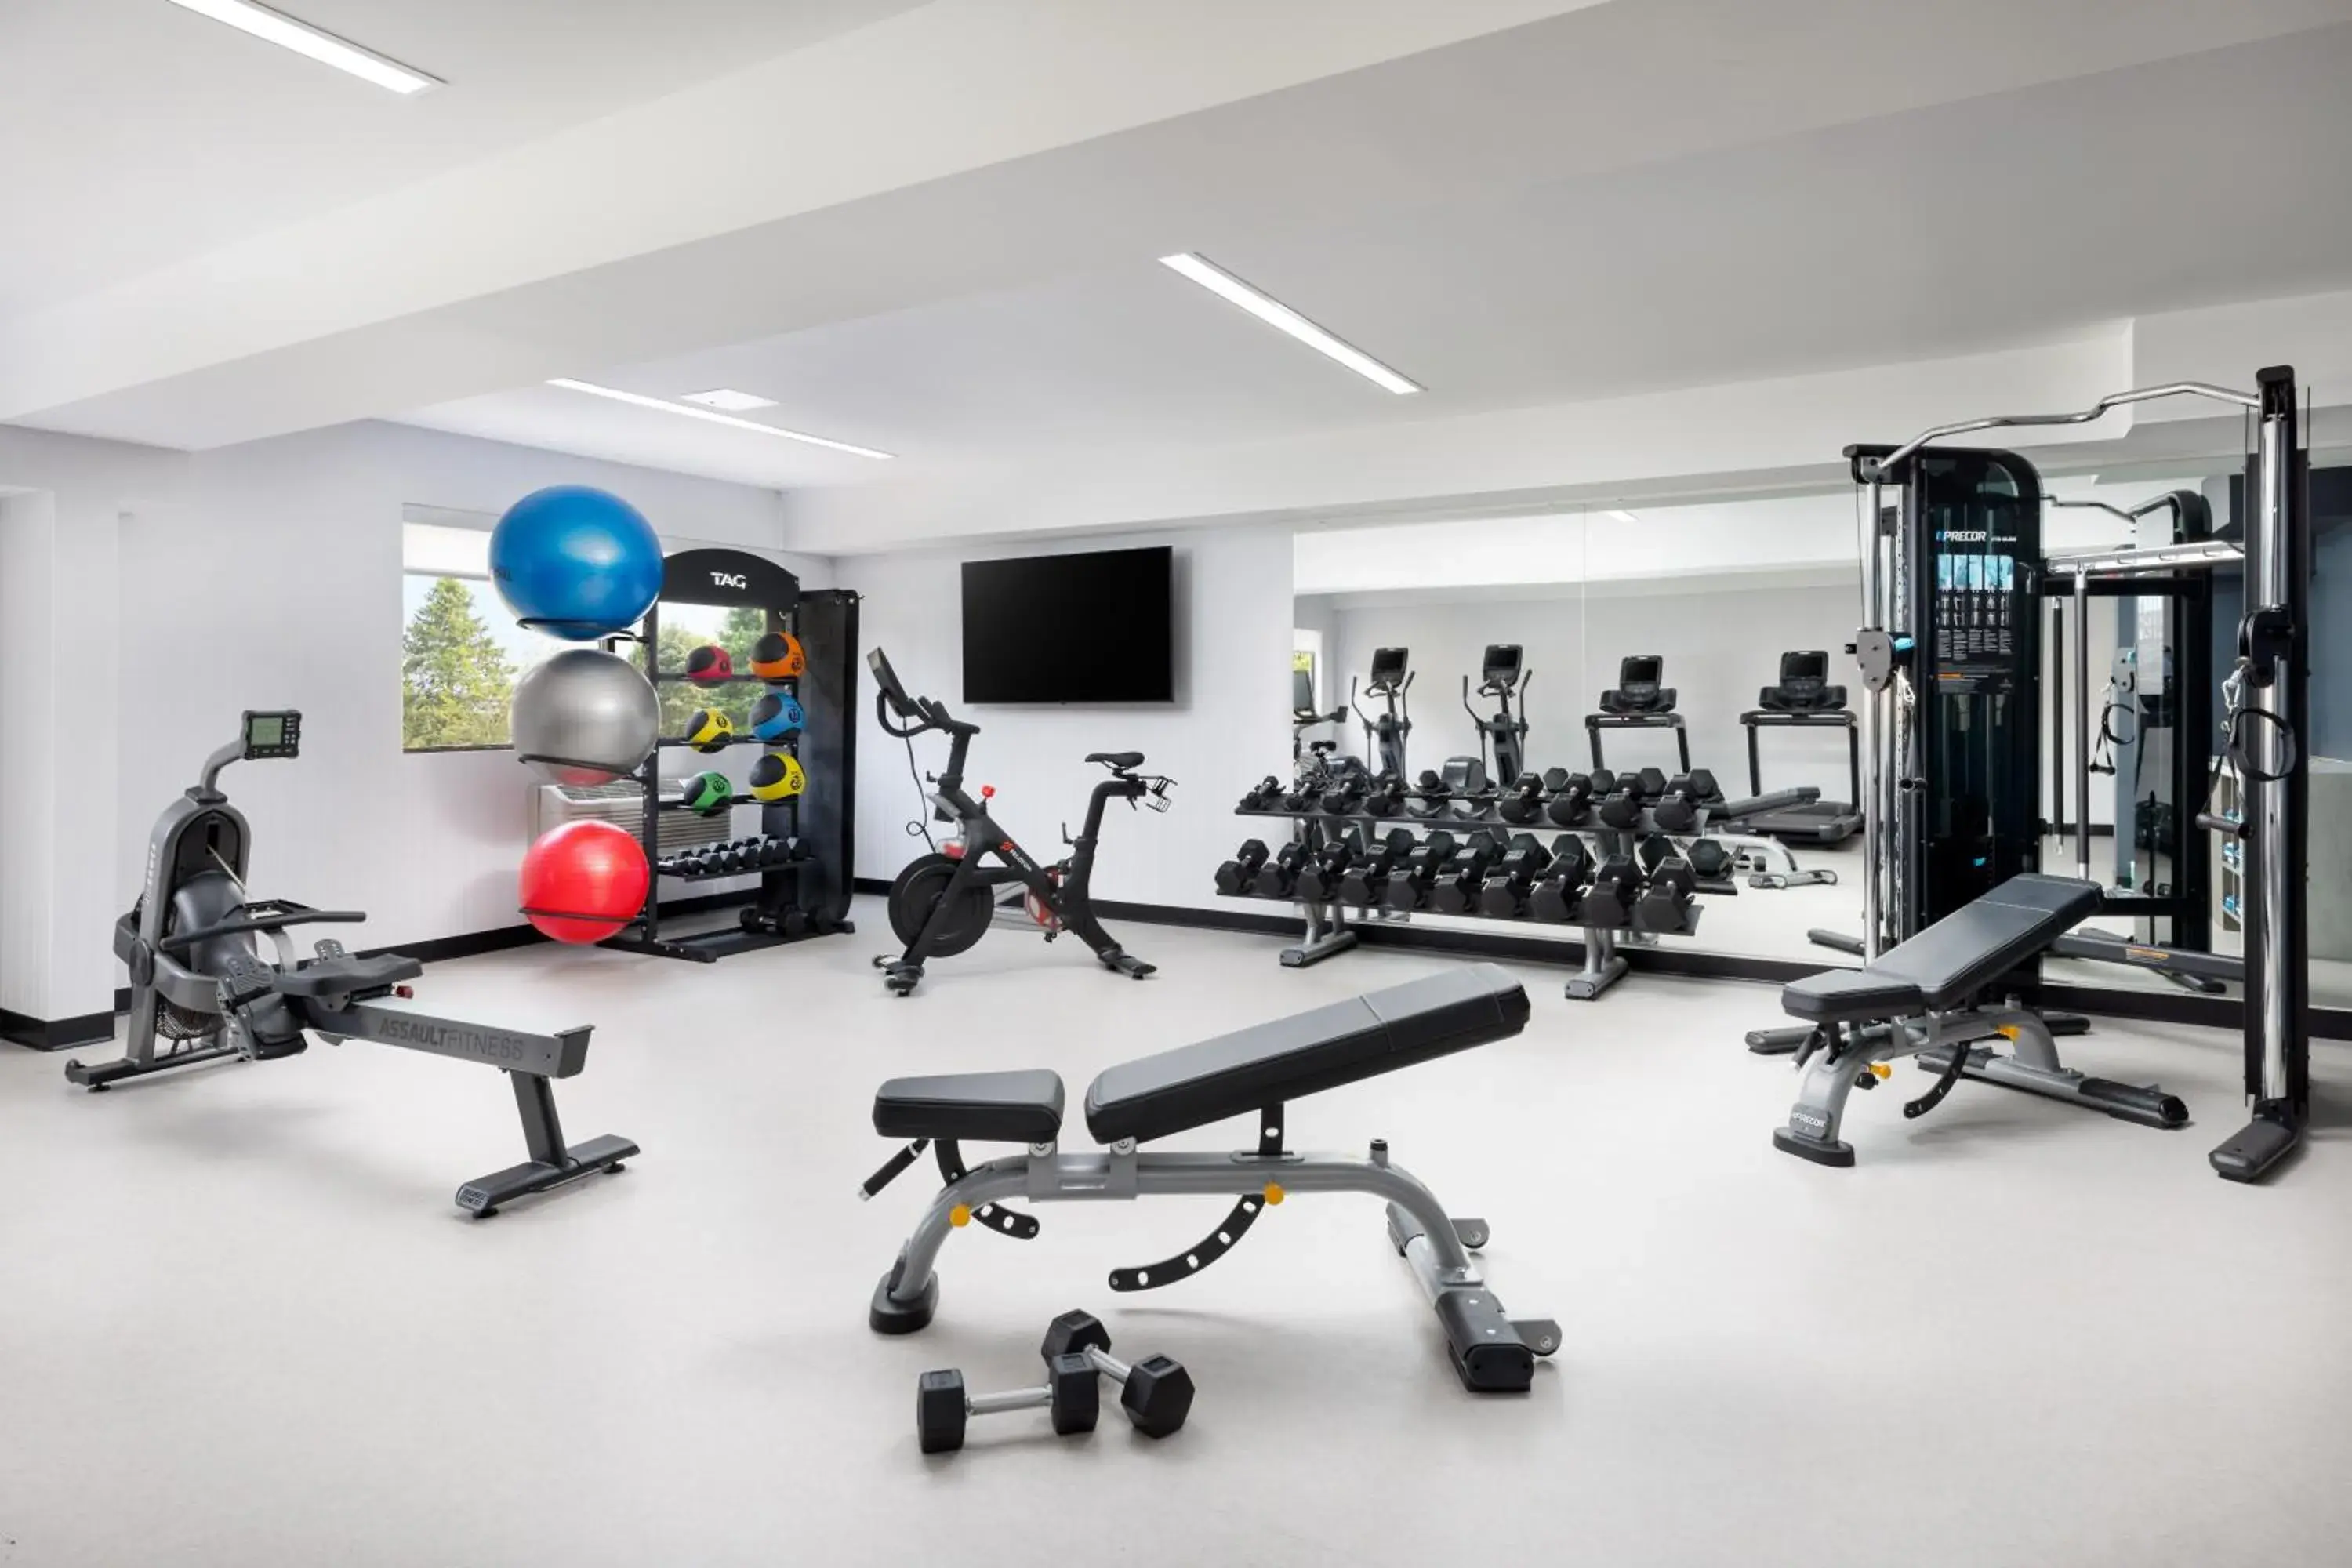 Fitness centre/facilities, Fitness Center/Facilities in The Pell, Part of JdV by Hyatt